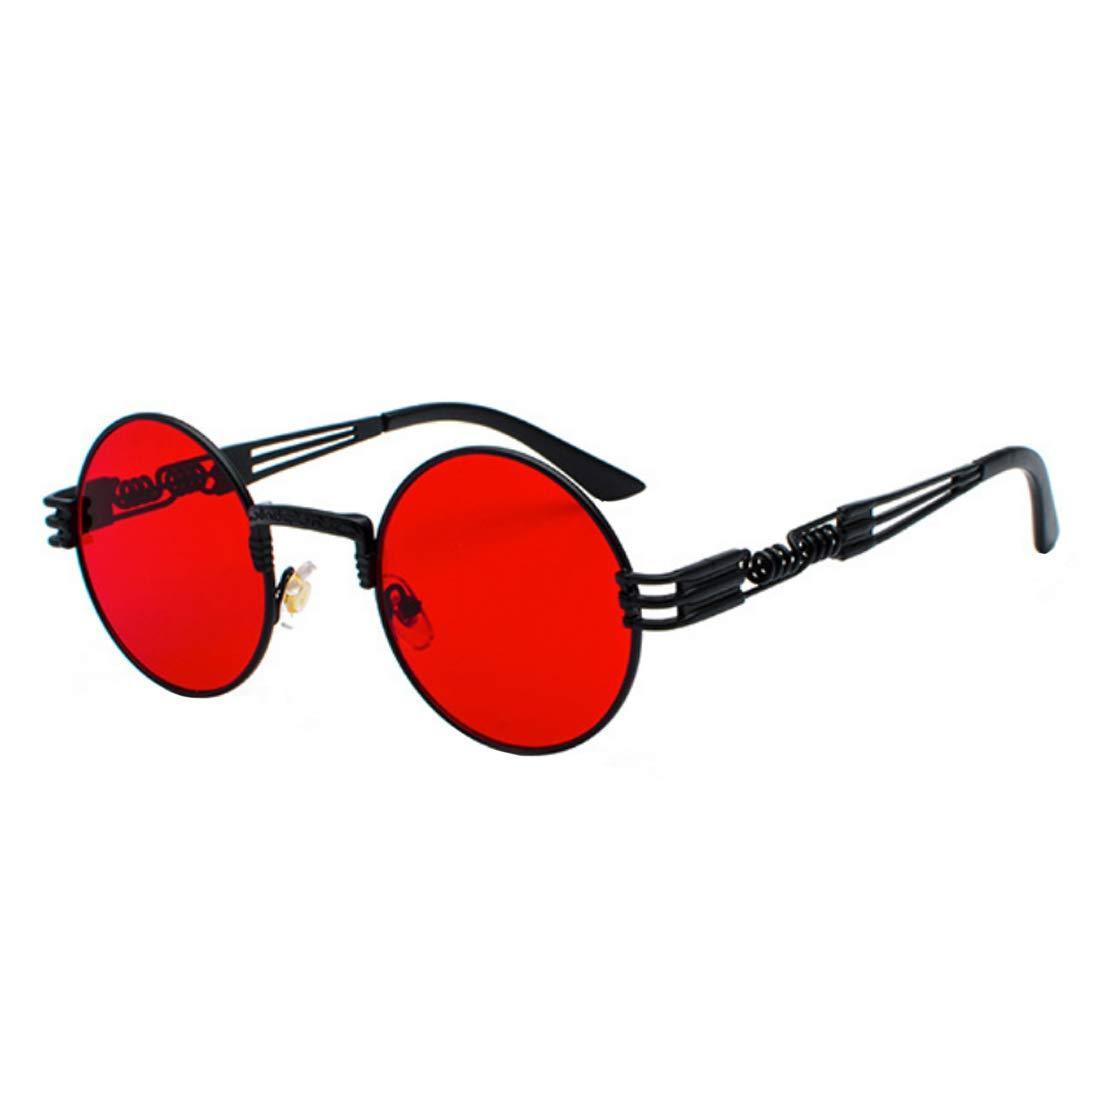 Buy Oval Sunglasses Vintage Retro Sunglasses Designer Glasses for Women Men  (Black Frame Grey Lens, 42) at Amazon.in